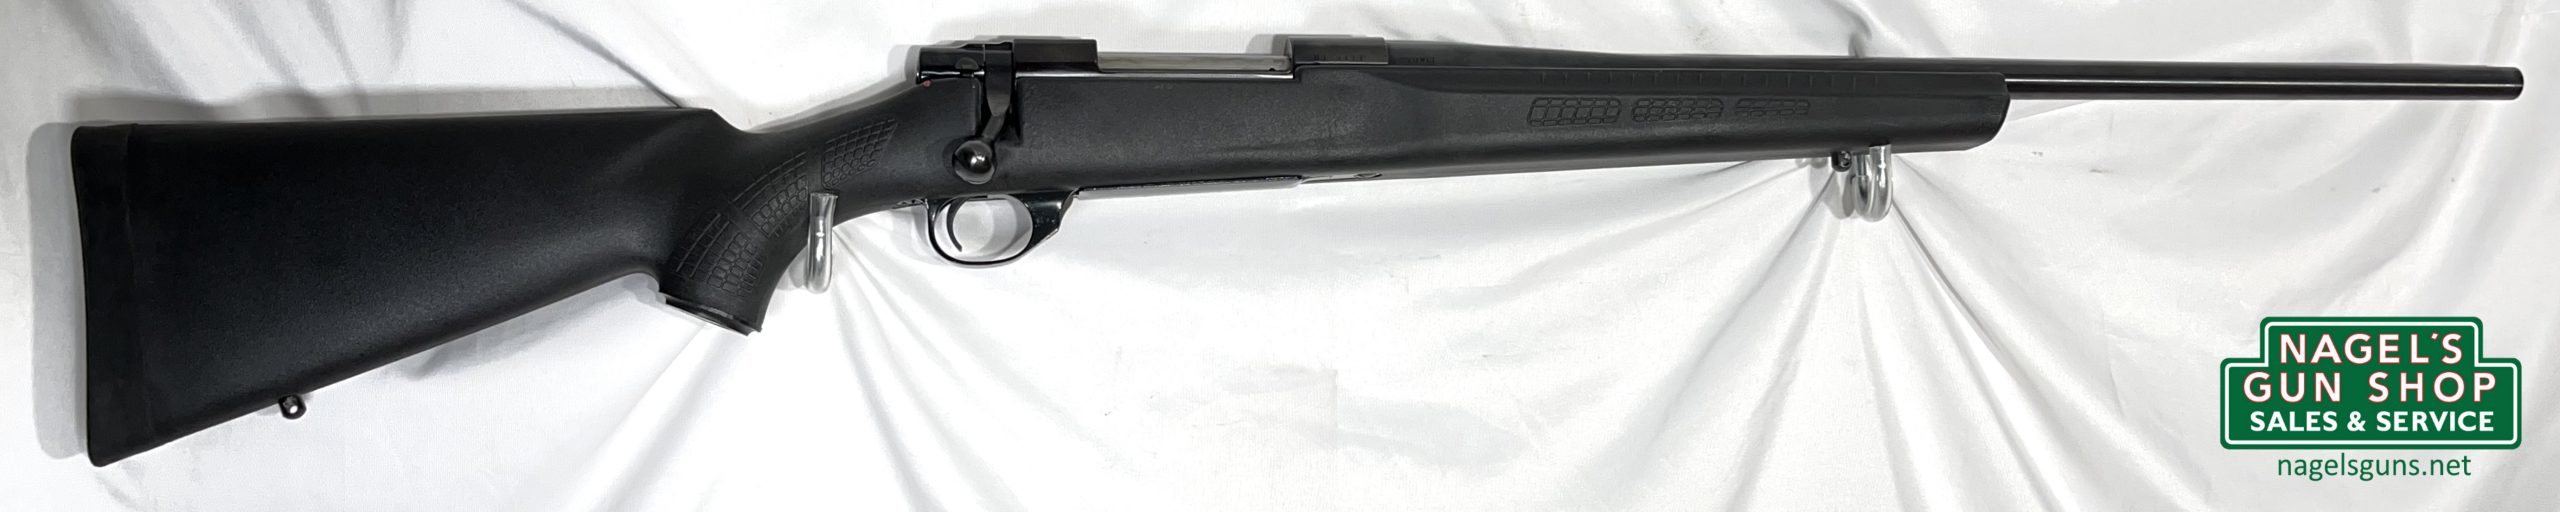 Sako A7 S 6.5 Creedmoor Rifle